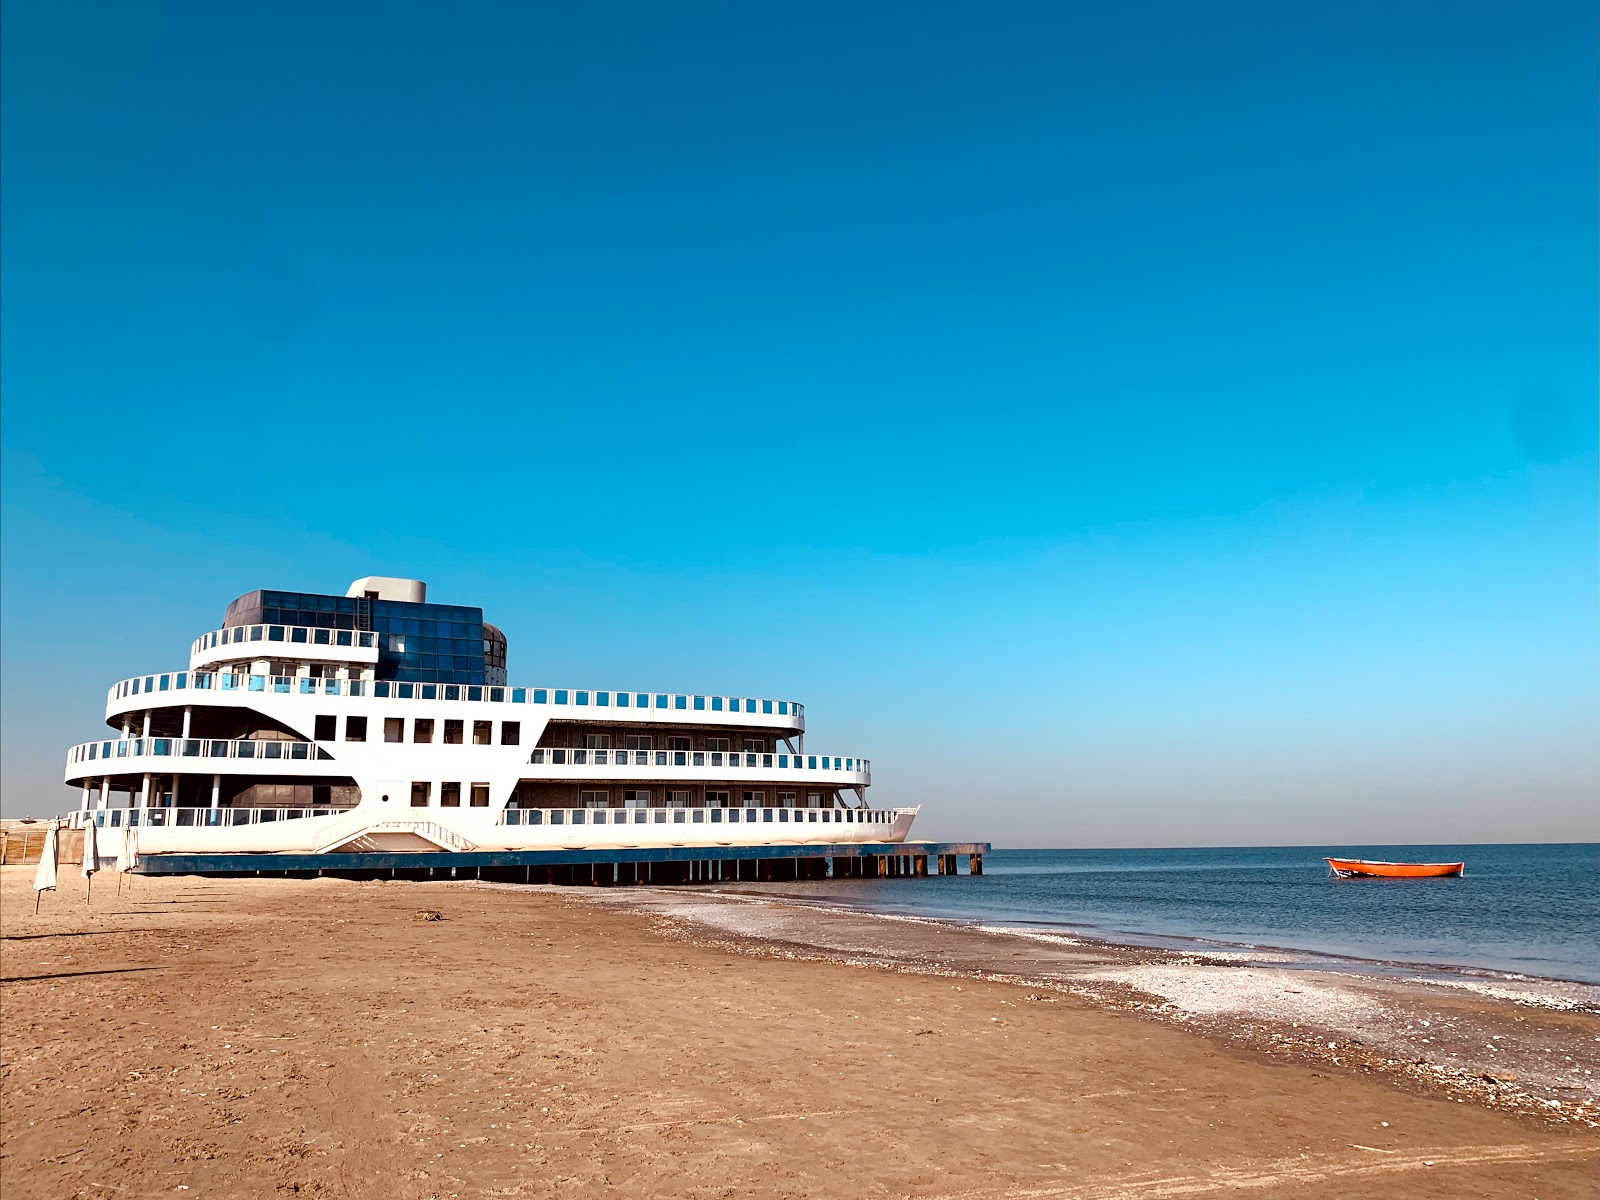 Foto de Port Said Beach - lugar popular entre los conocedores del relax